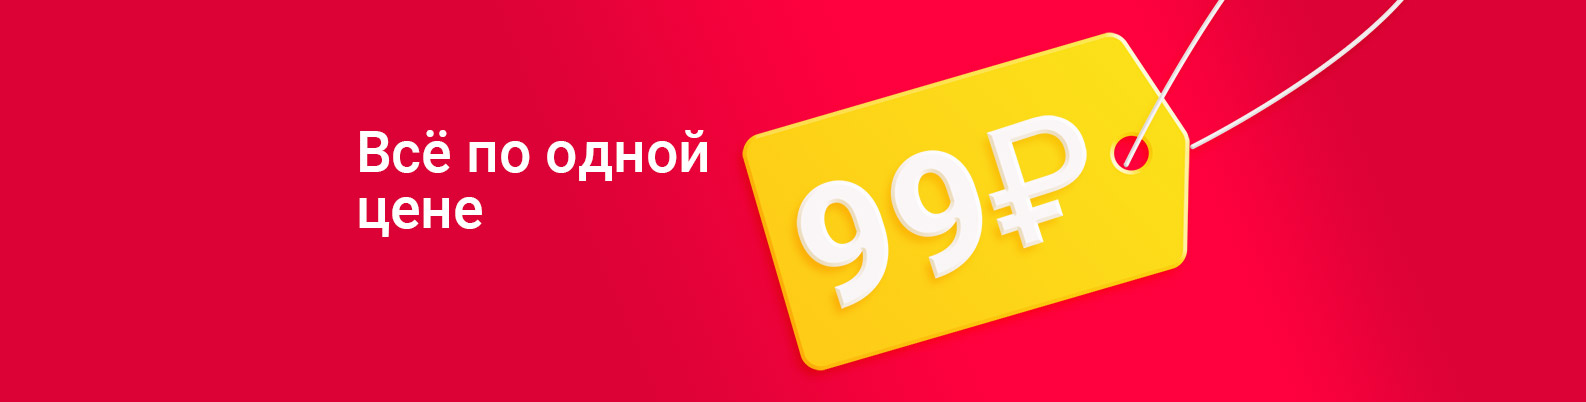 Супер цена 99 рублей. Optrf ru оптовый интернет магазин одежды